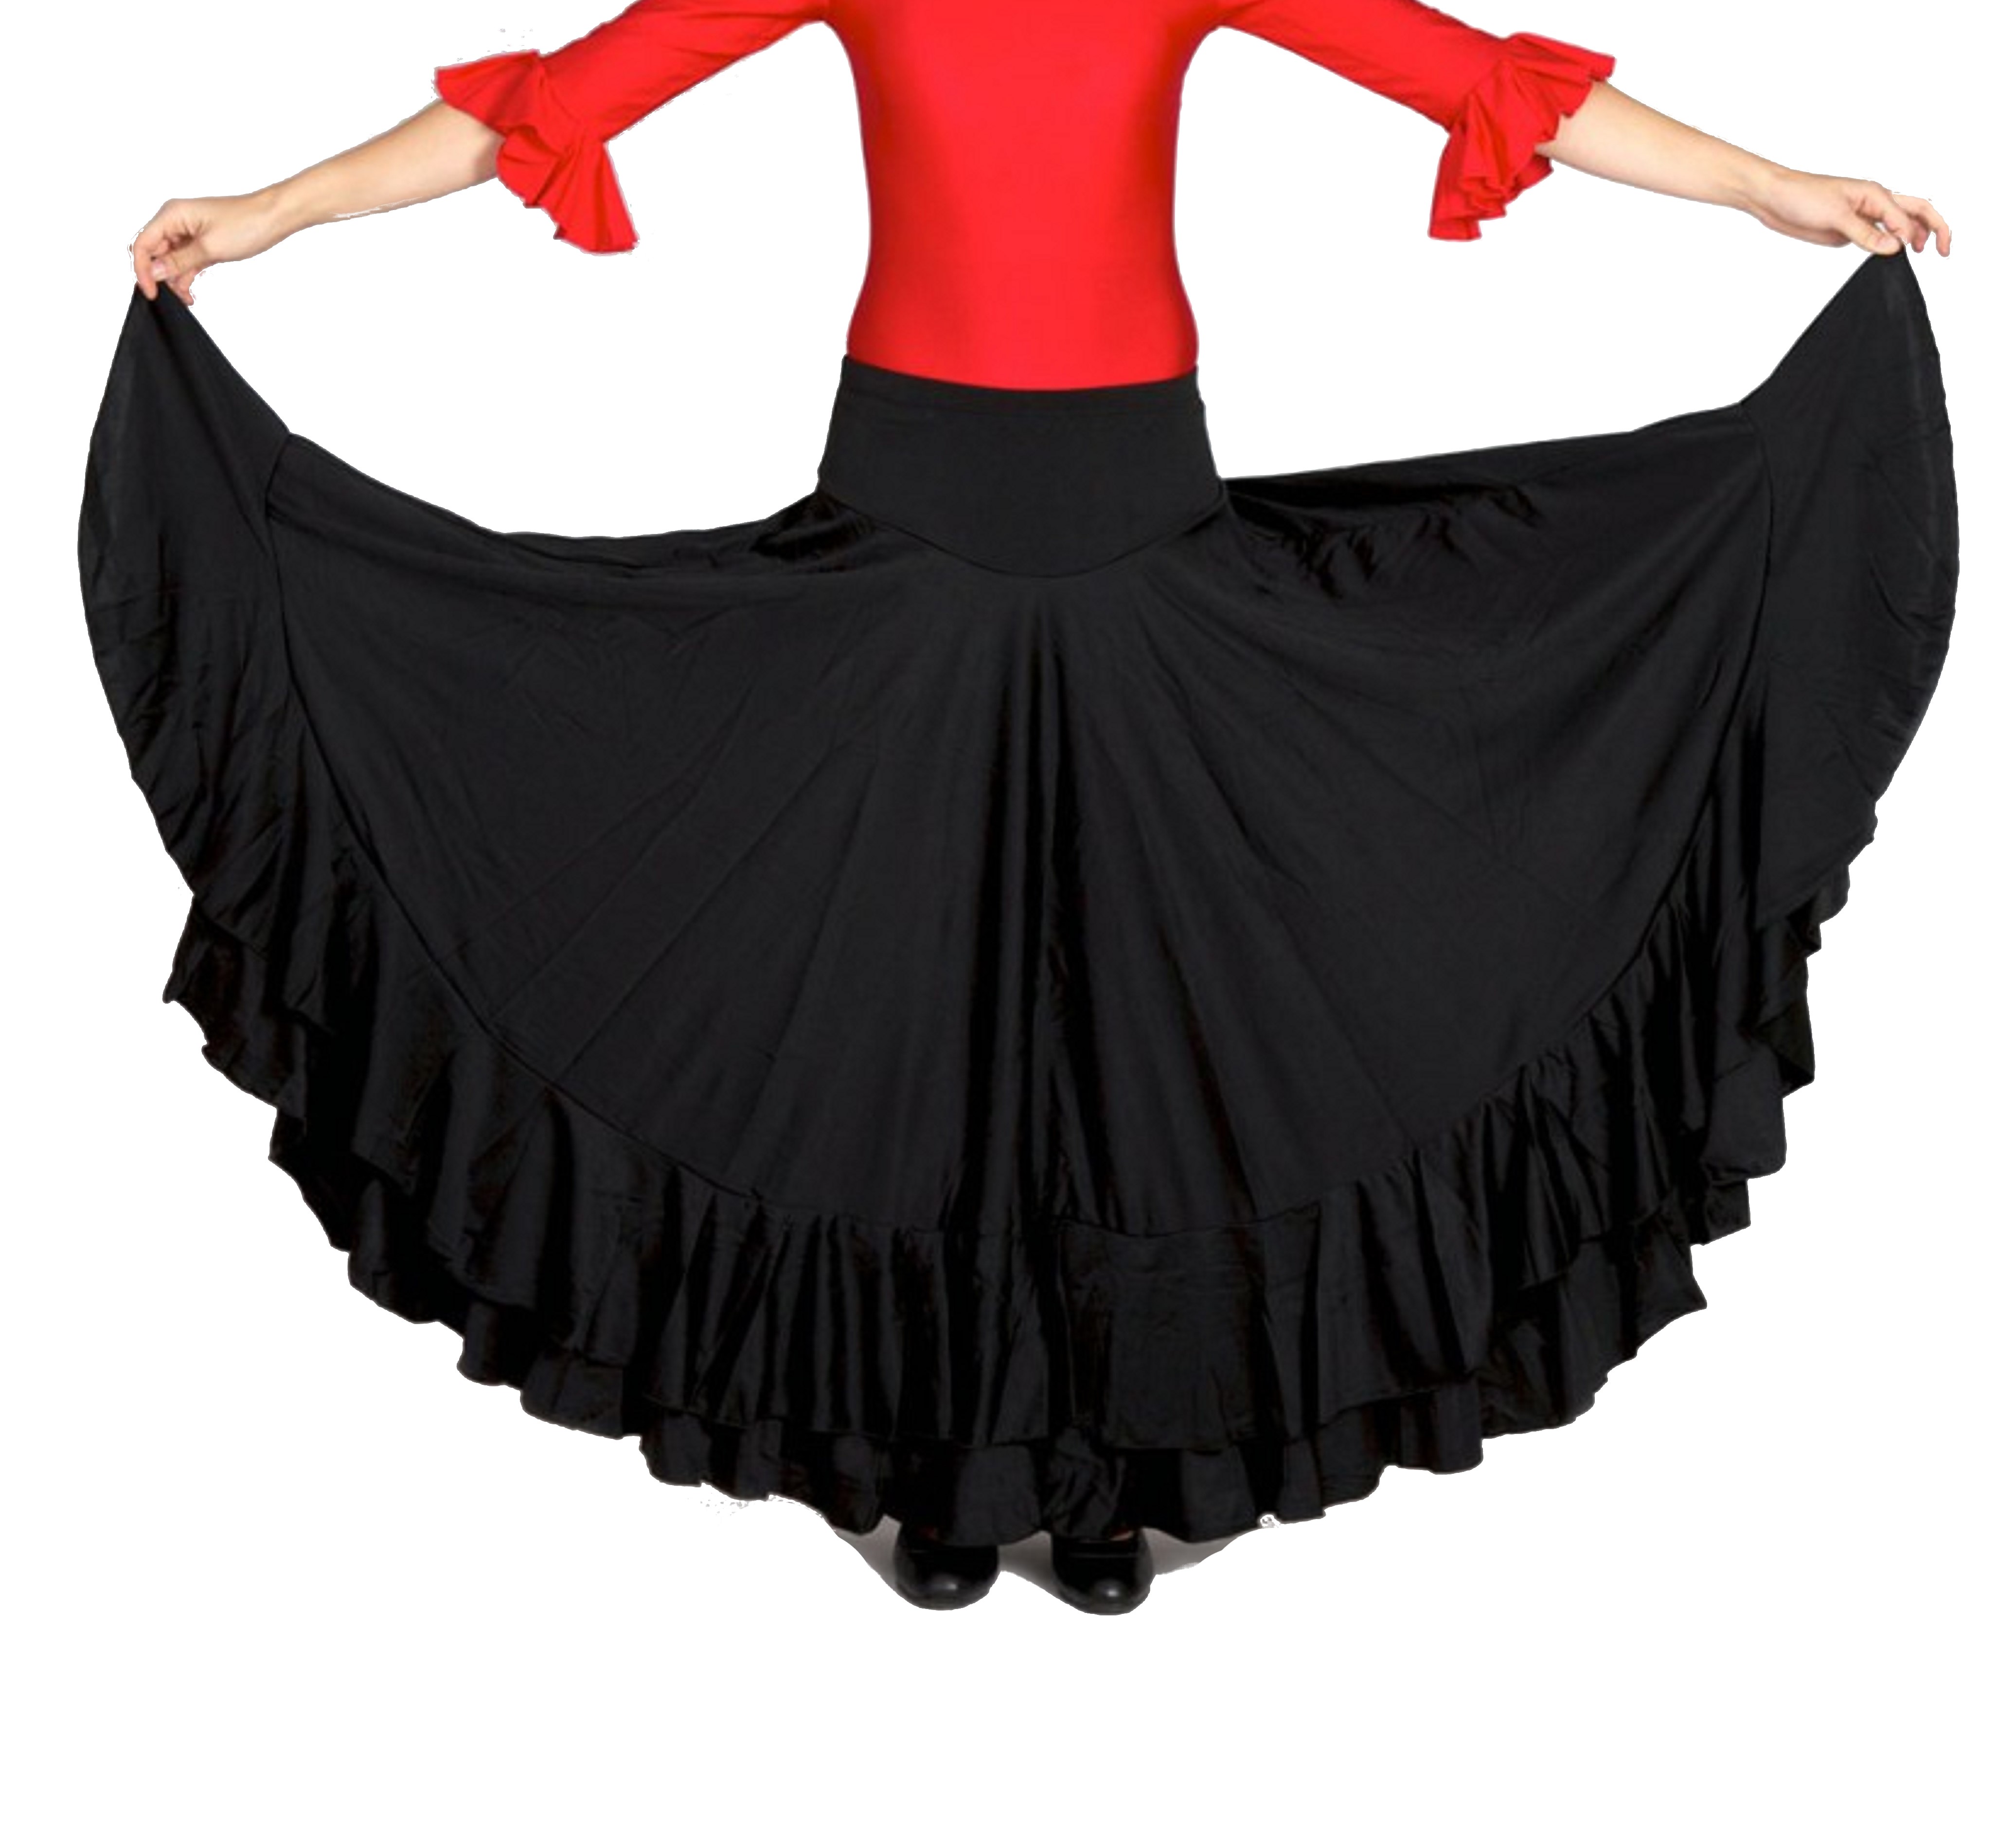 Falda para baile flamenco infantil, cinco volantes en cascada